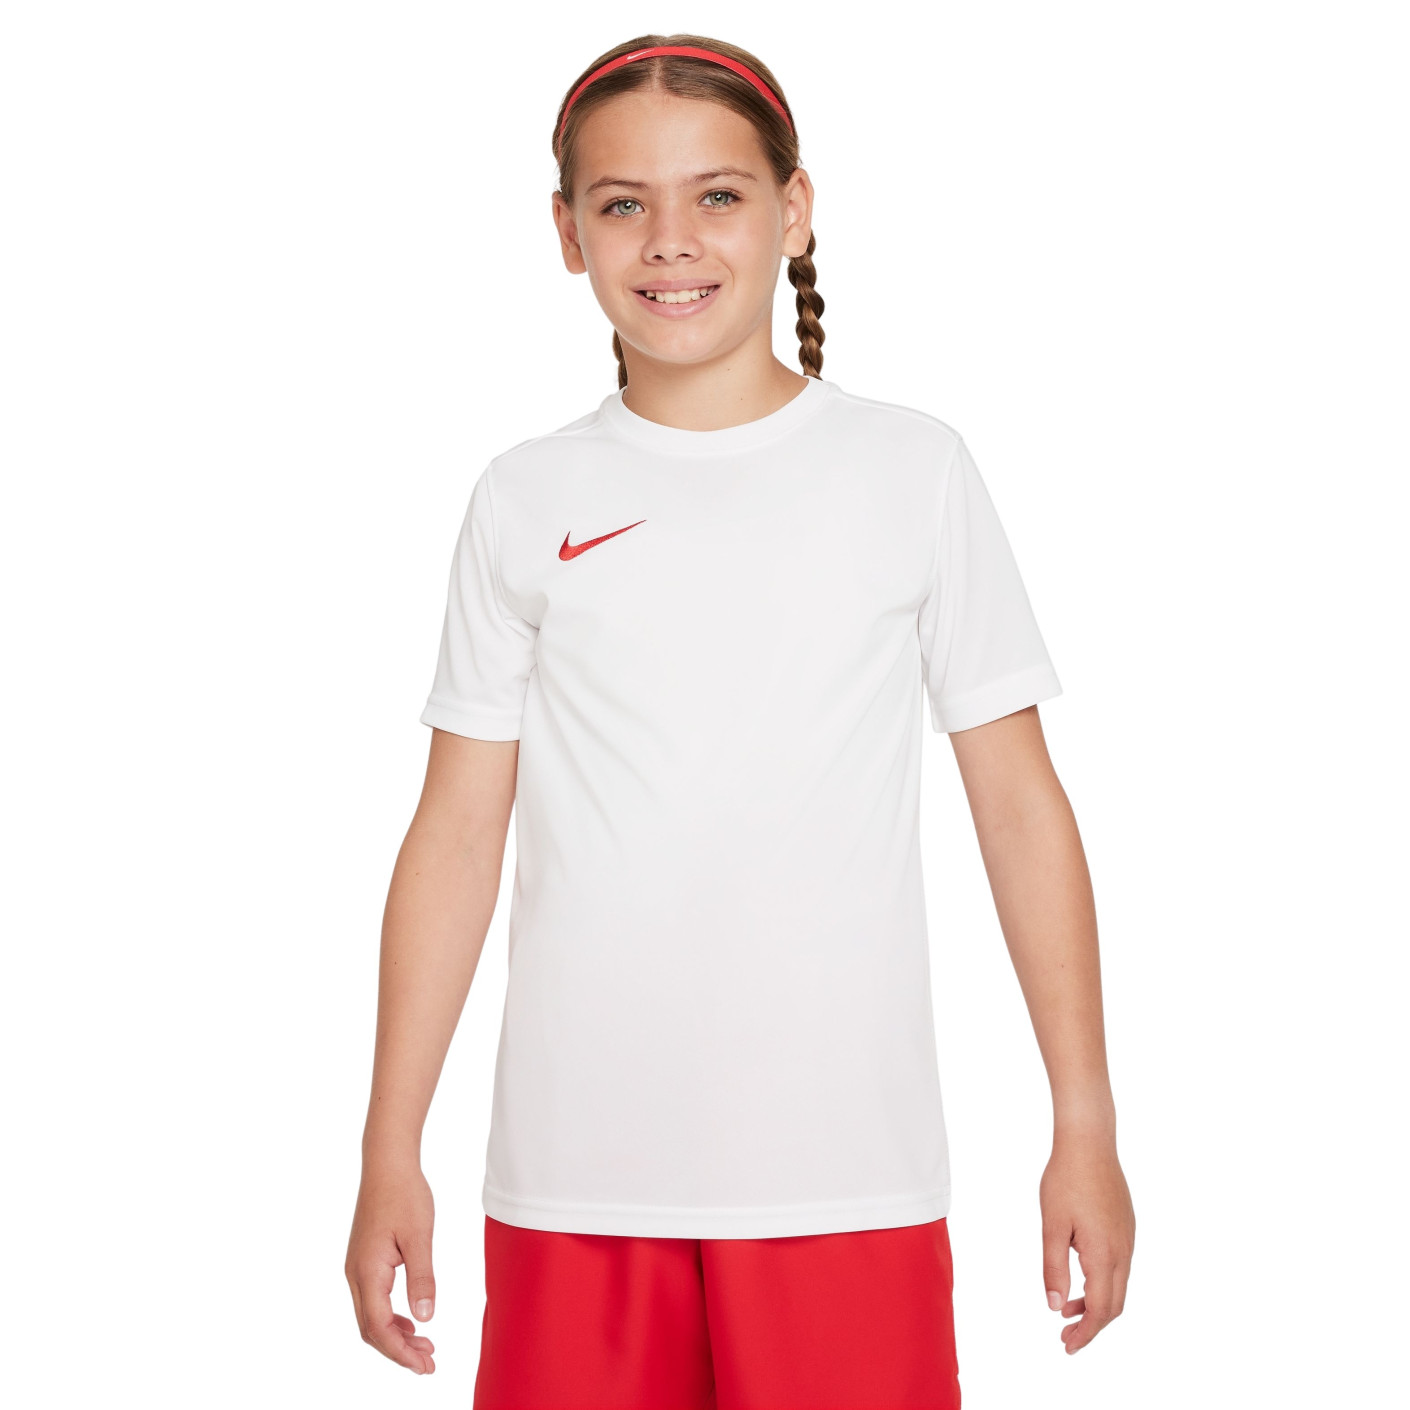 Nike Park VII Voetbalshirt Kids Wit Rood